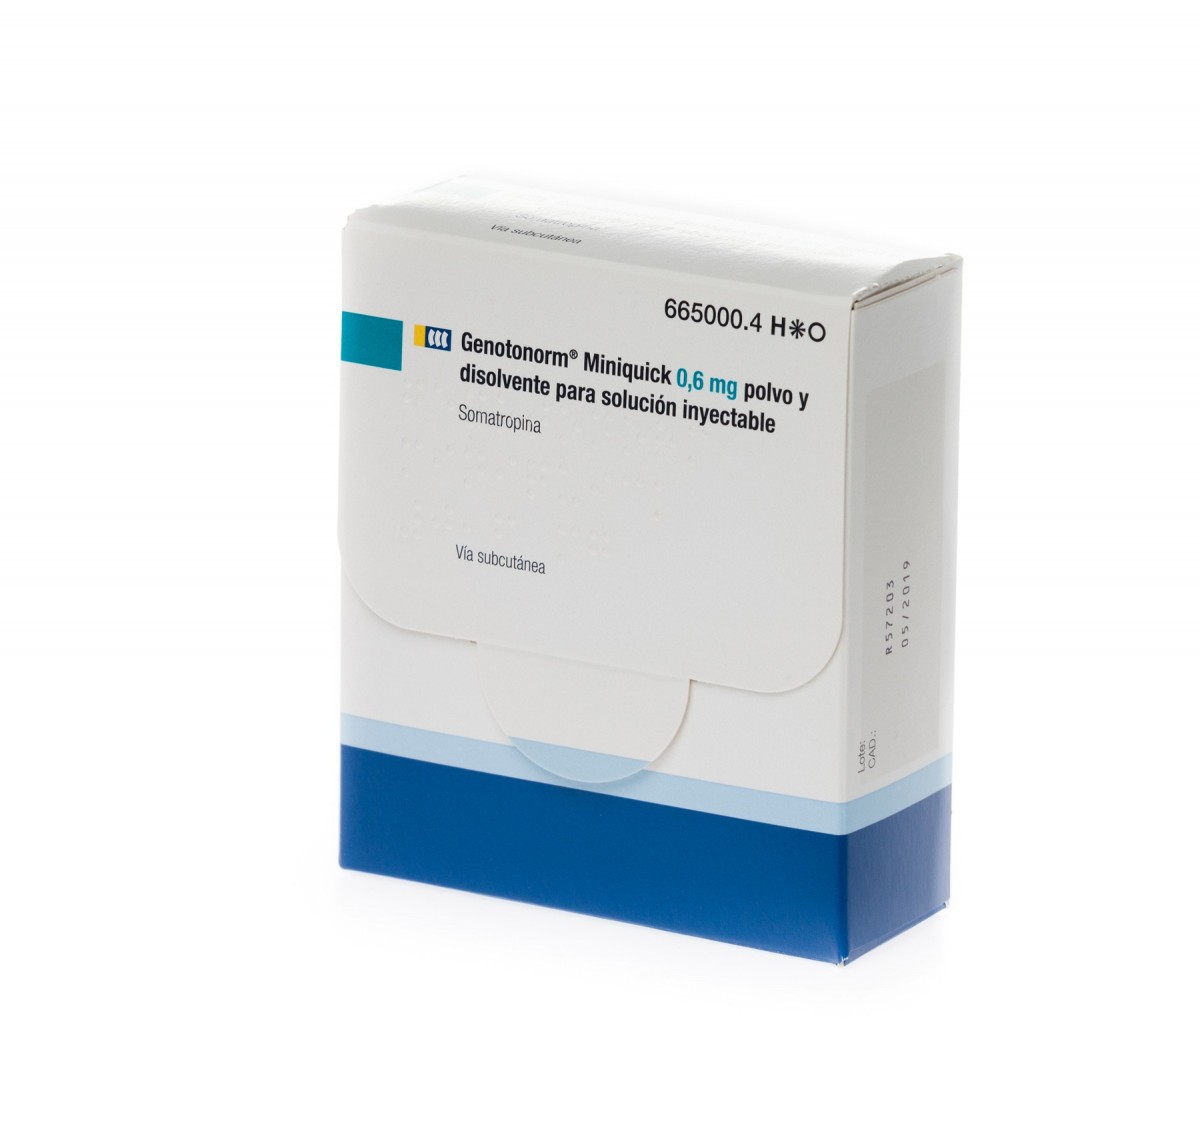 GENOTONORM MINIQUICK 0,6 mg POLVO Y DISOLVENTE PARA SOLUCION INYECTABLE 28 (4 x 7) viales de doble cámara fotografía del envase.